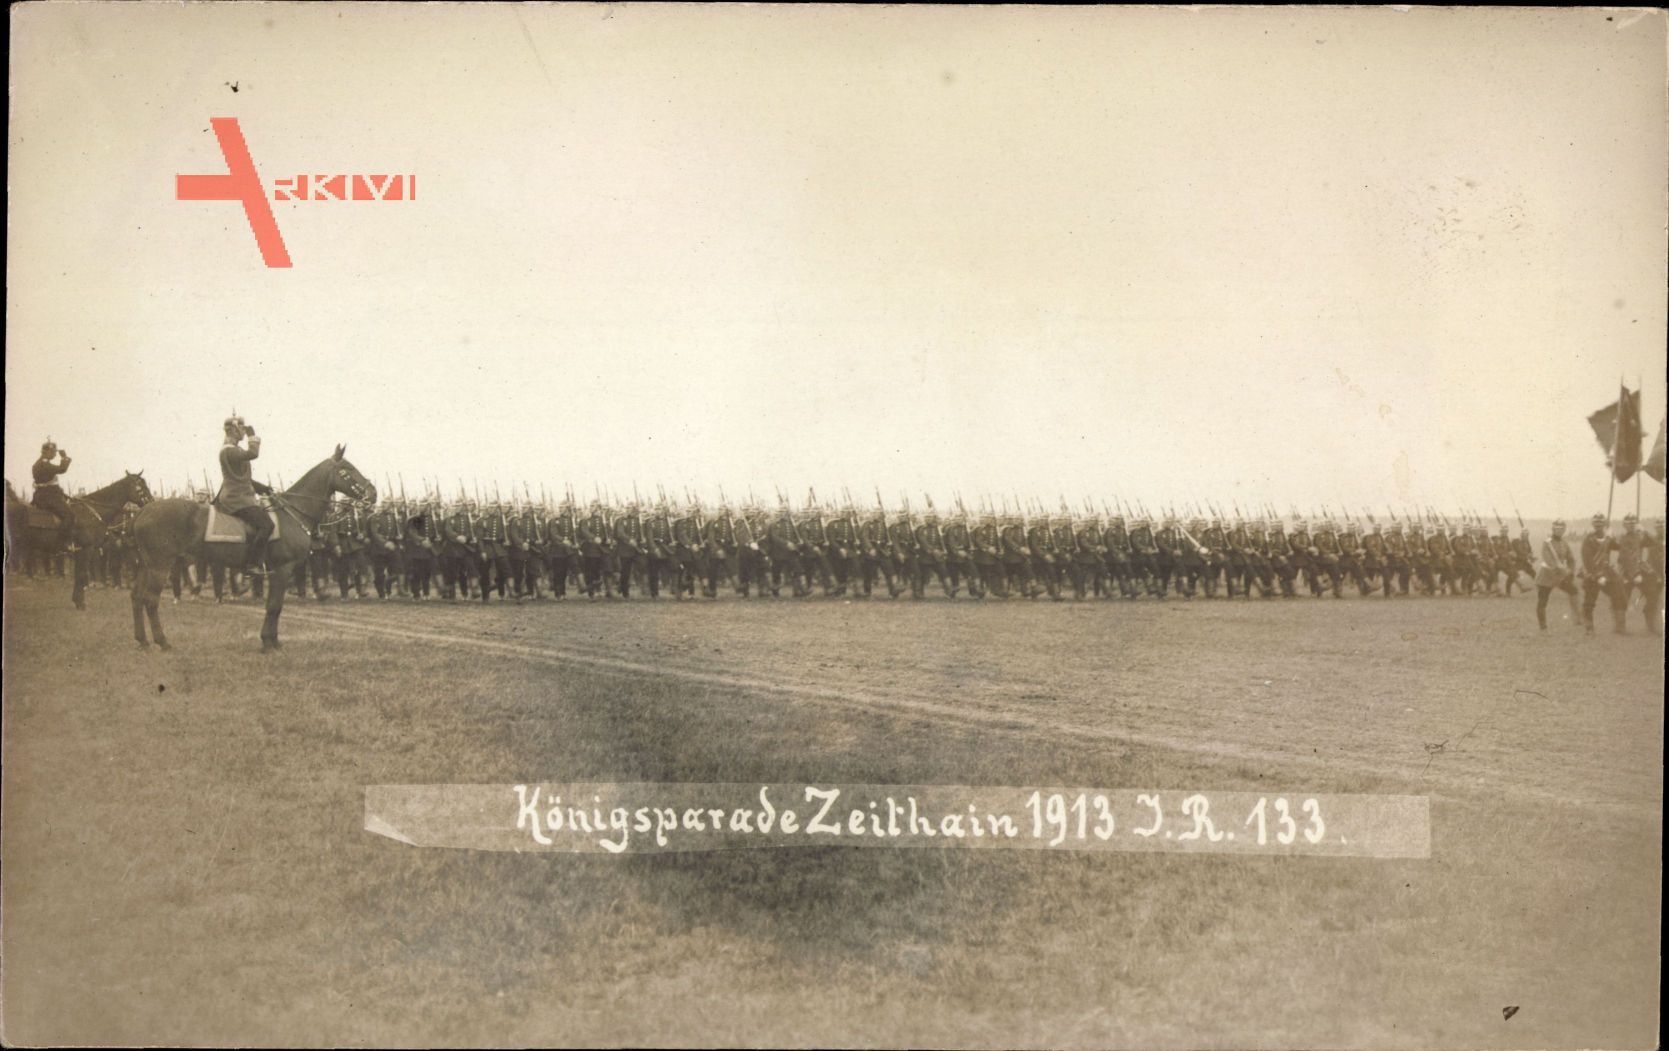 Zeithain in Sachsen, Königsparade 1913 auf dem Feld